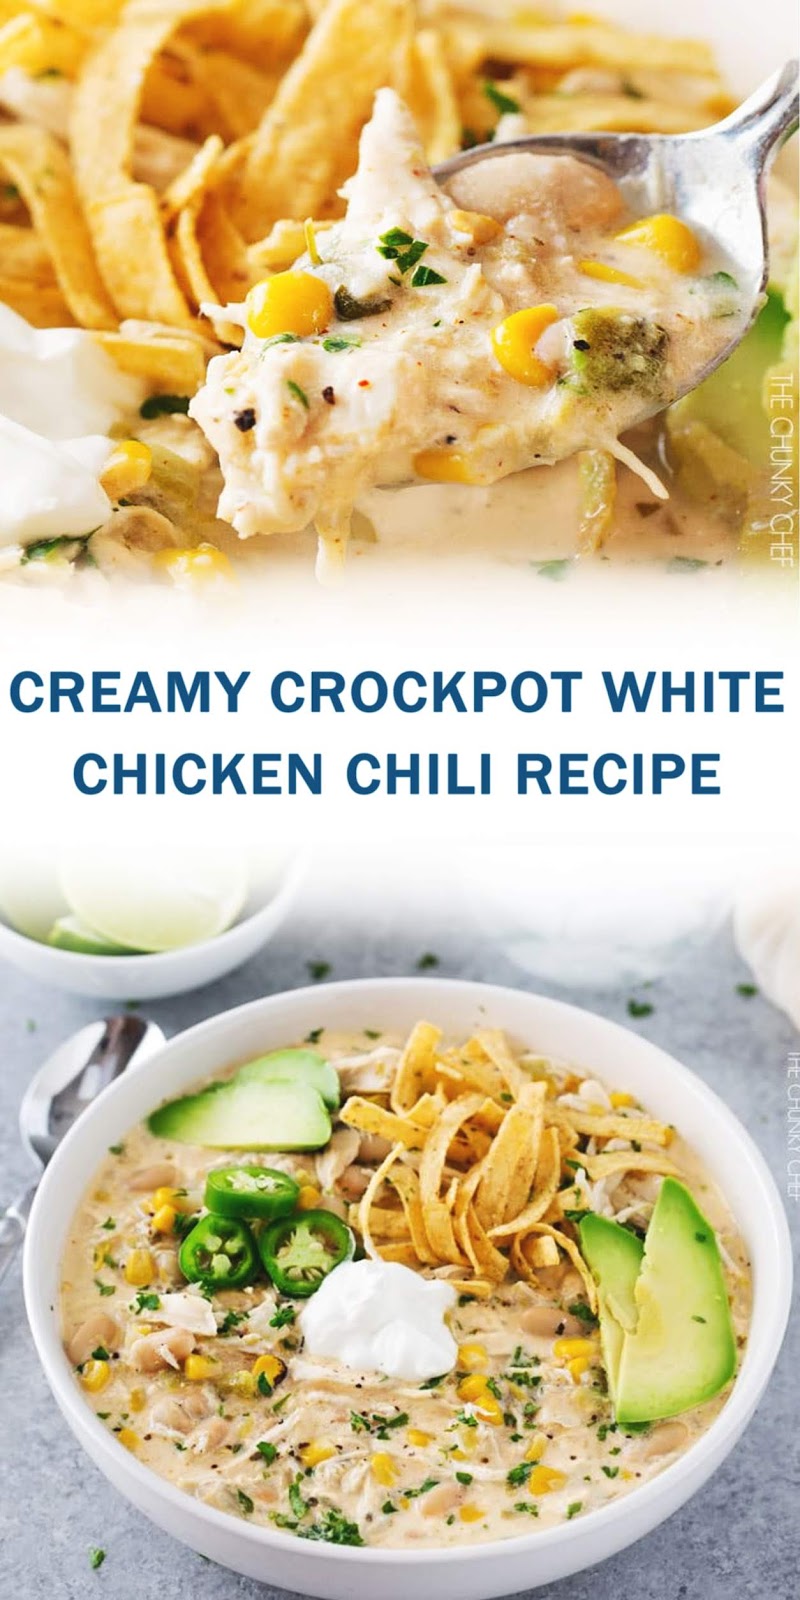 CREAMY CROCKPOT WHITE CHICKEN CHILI RECIPE